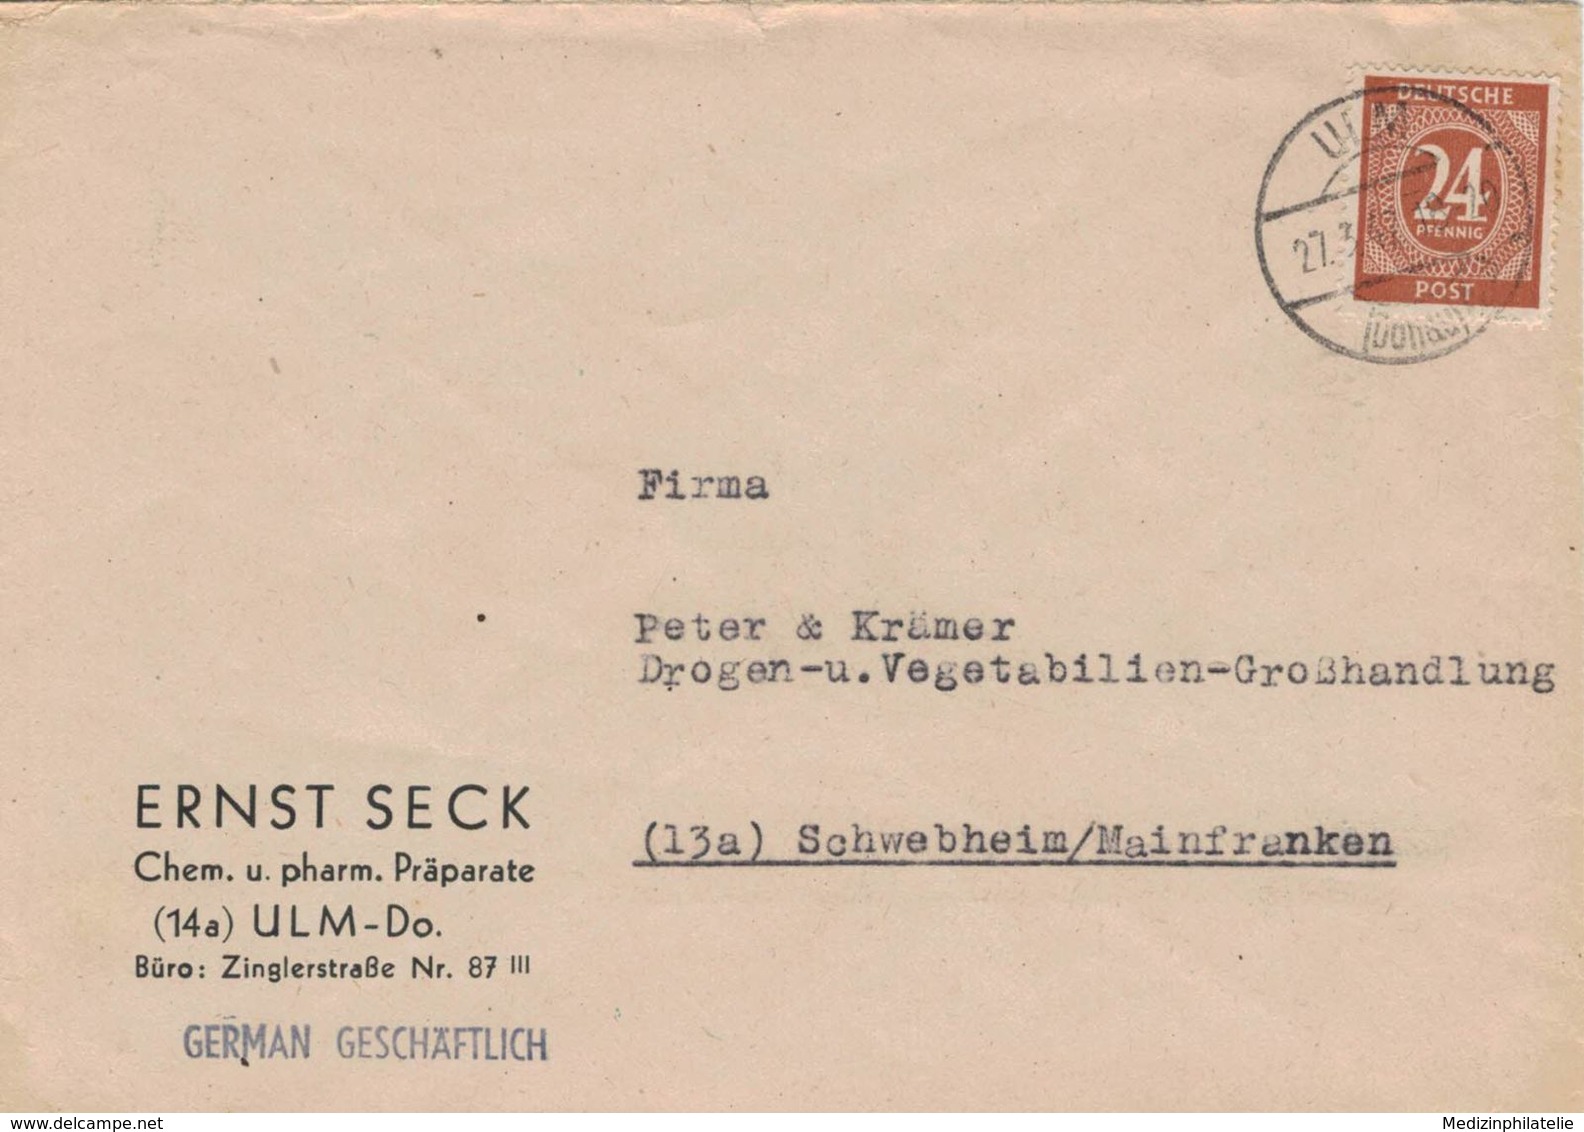 Ernst Seck Chem.-pharm. Produkte Ulm Donau 1947- Pfg. All. Bes.- German Geschäftlich - Pharmacy